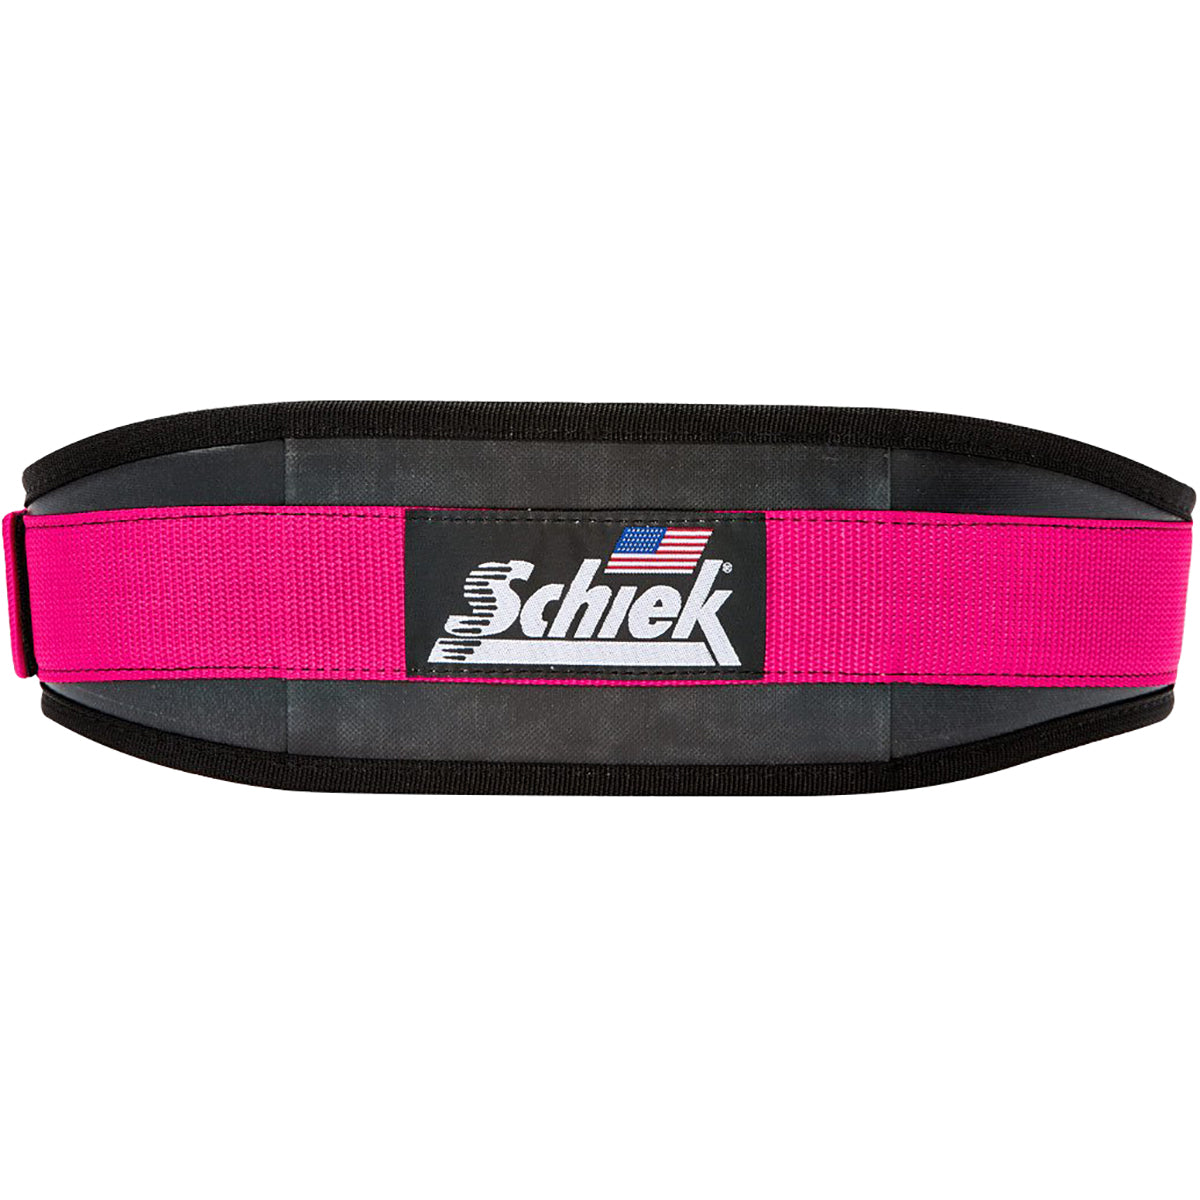 Schiek Sports Model 3004 Power Lifting Belt - Pink Schiek Sports